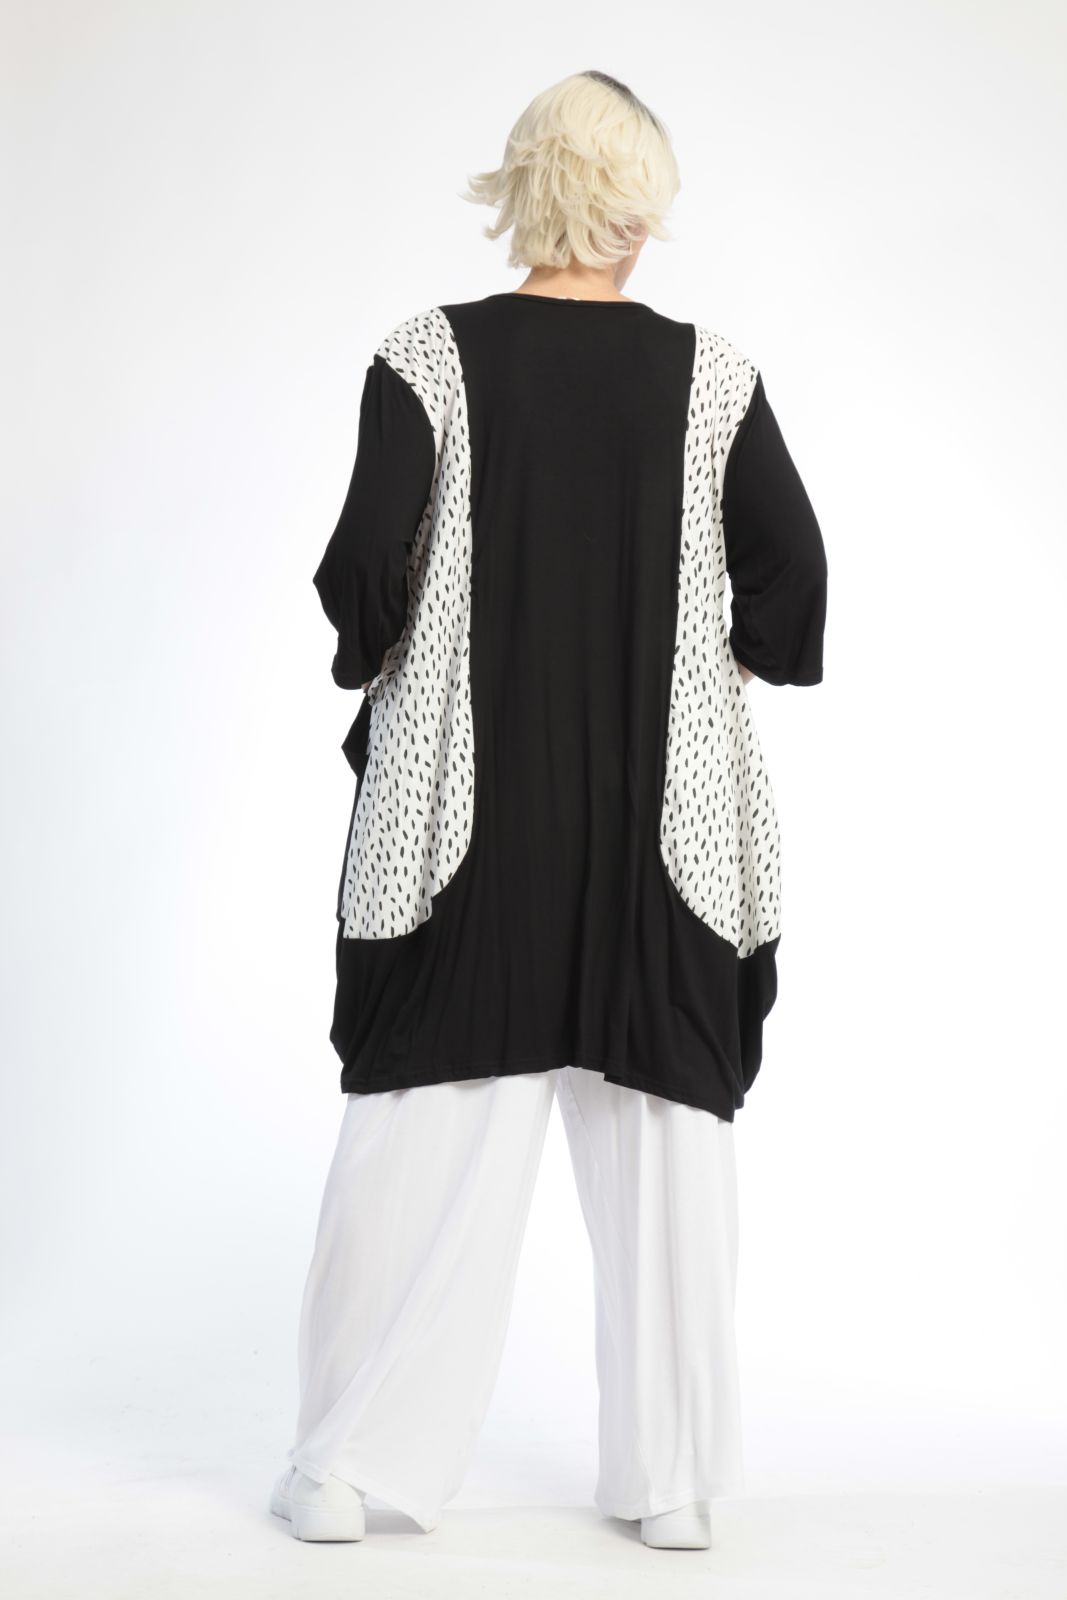 Sommer Shirt in Ballon Form aus er Jersey Qualität, Schwarz-Weiß Lagenlook Oversize Mode B2B Großhandel